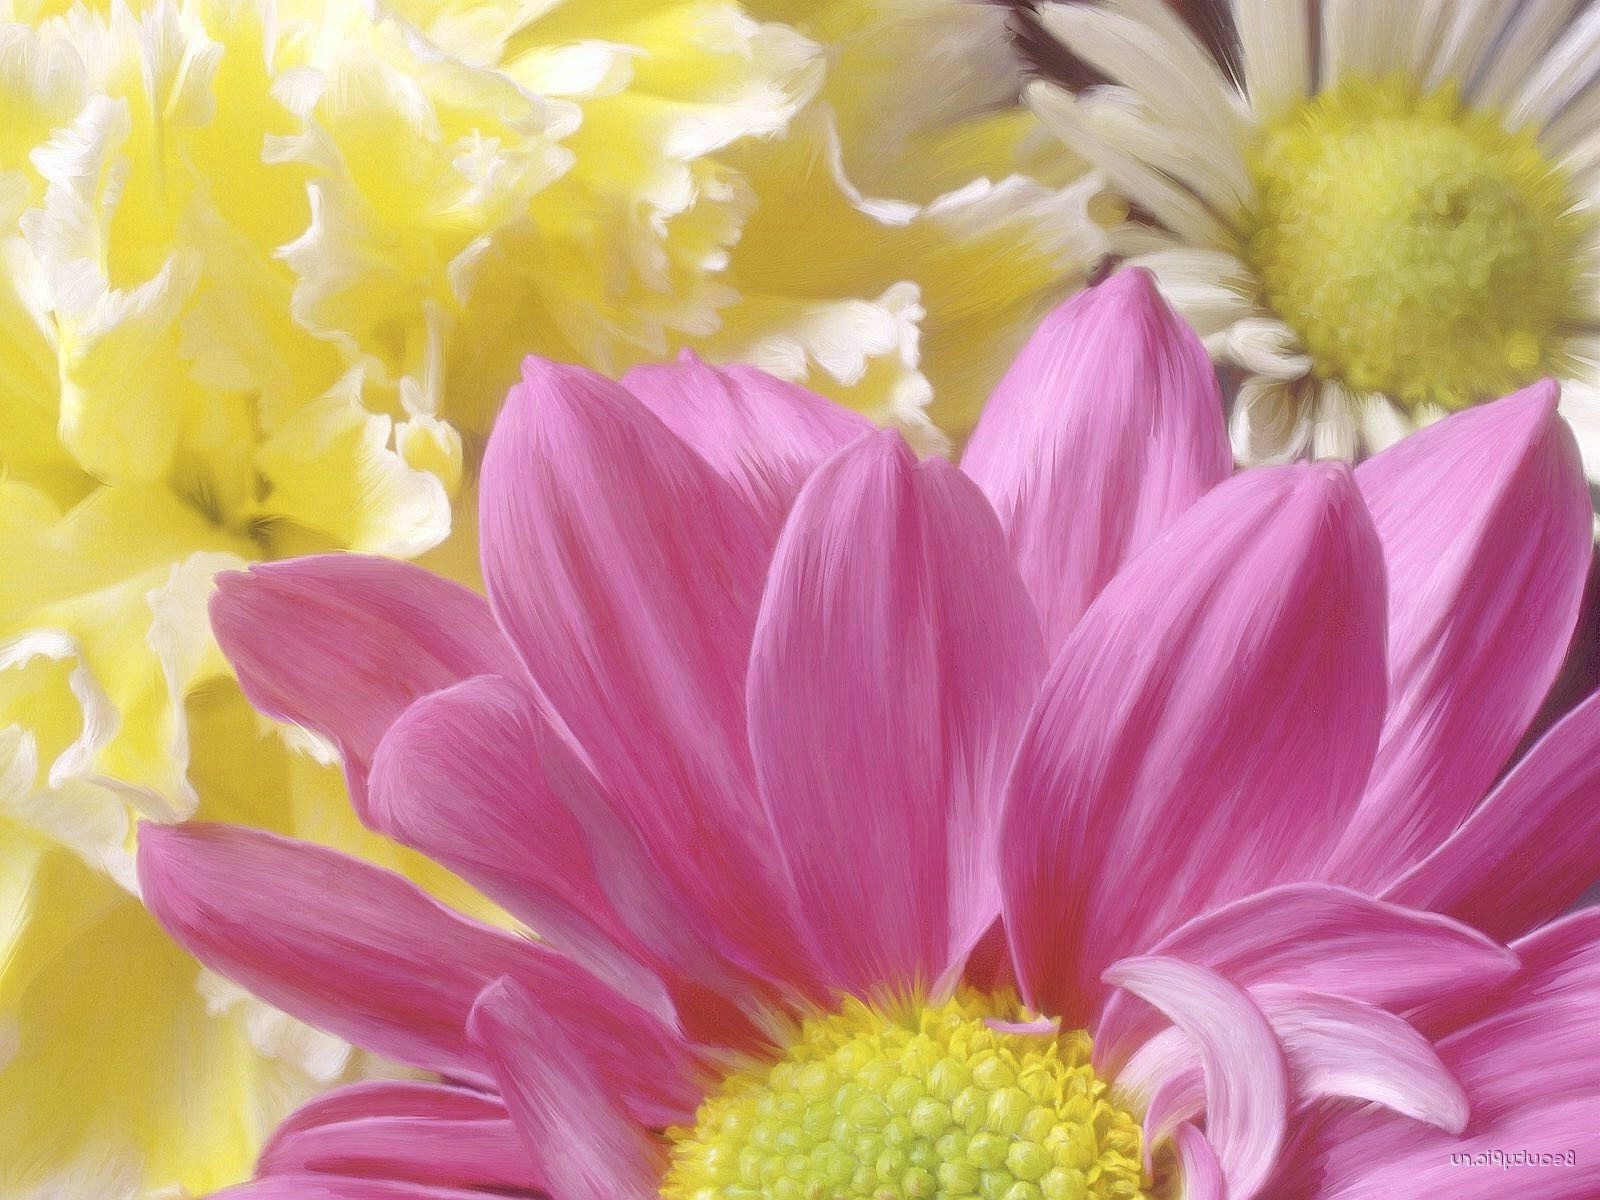 крупным планом цветок природа цветочные флора лепесток красивые лето цвет блюминг яркий букет сад лист рабочего стола подарок любовь романтический романтика крупным планом украшения